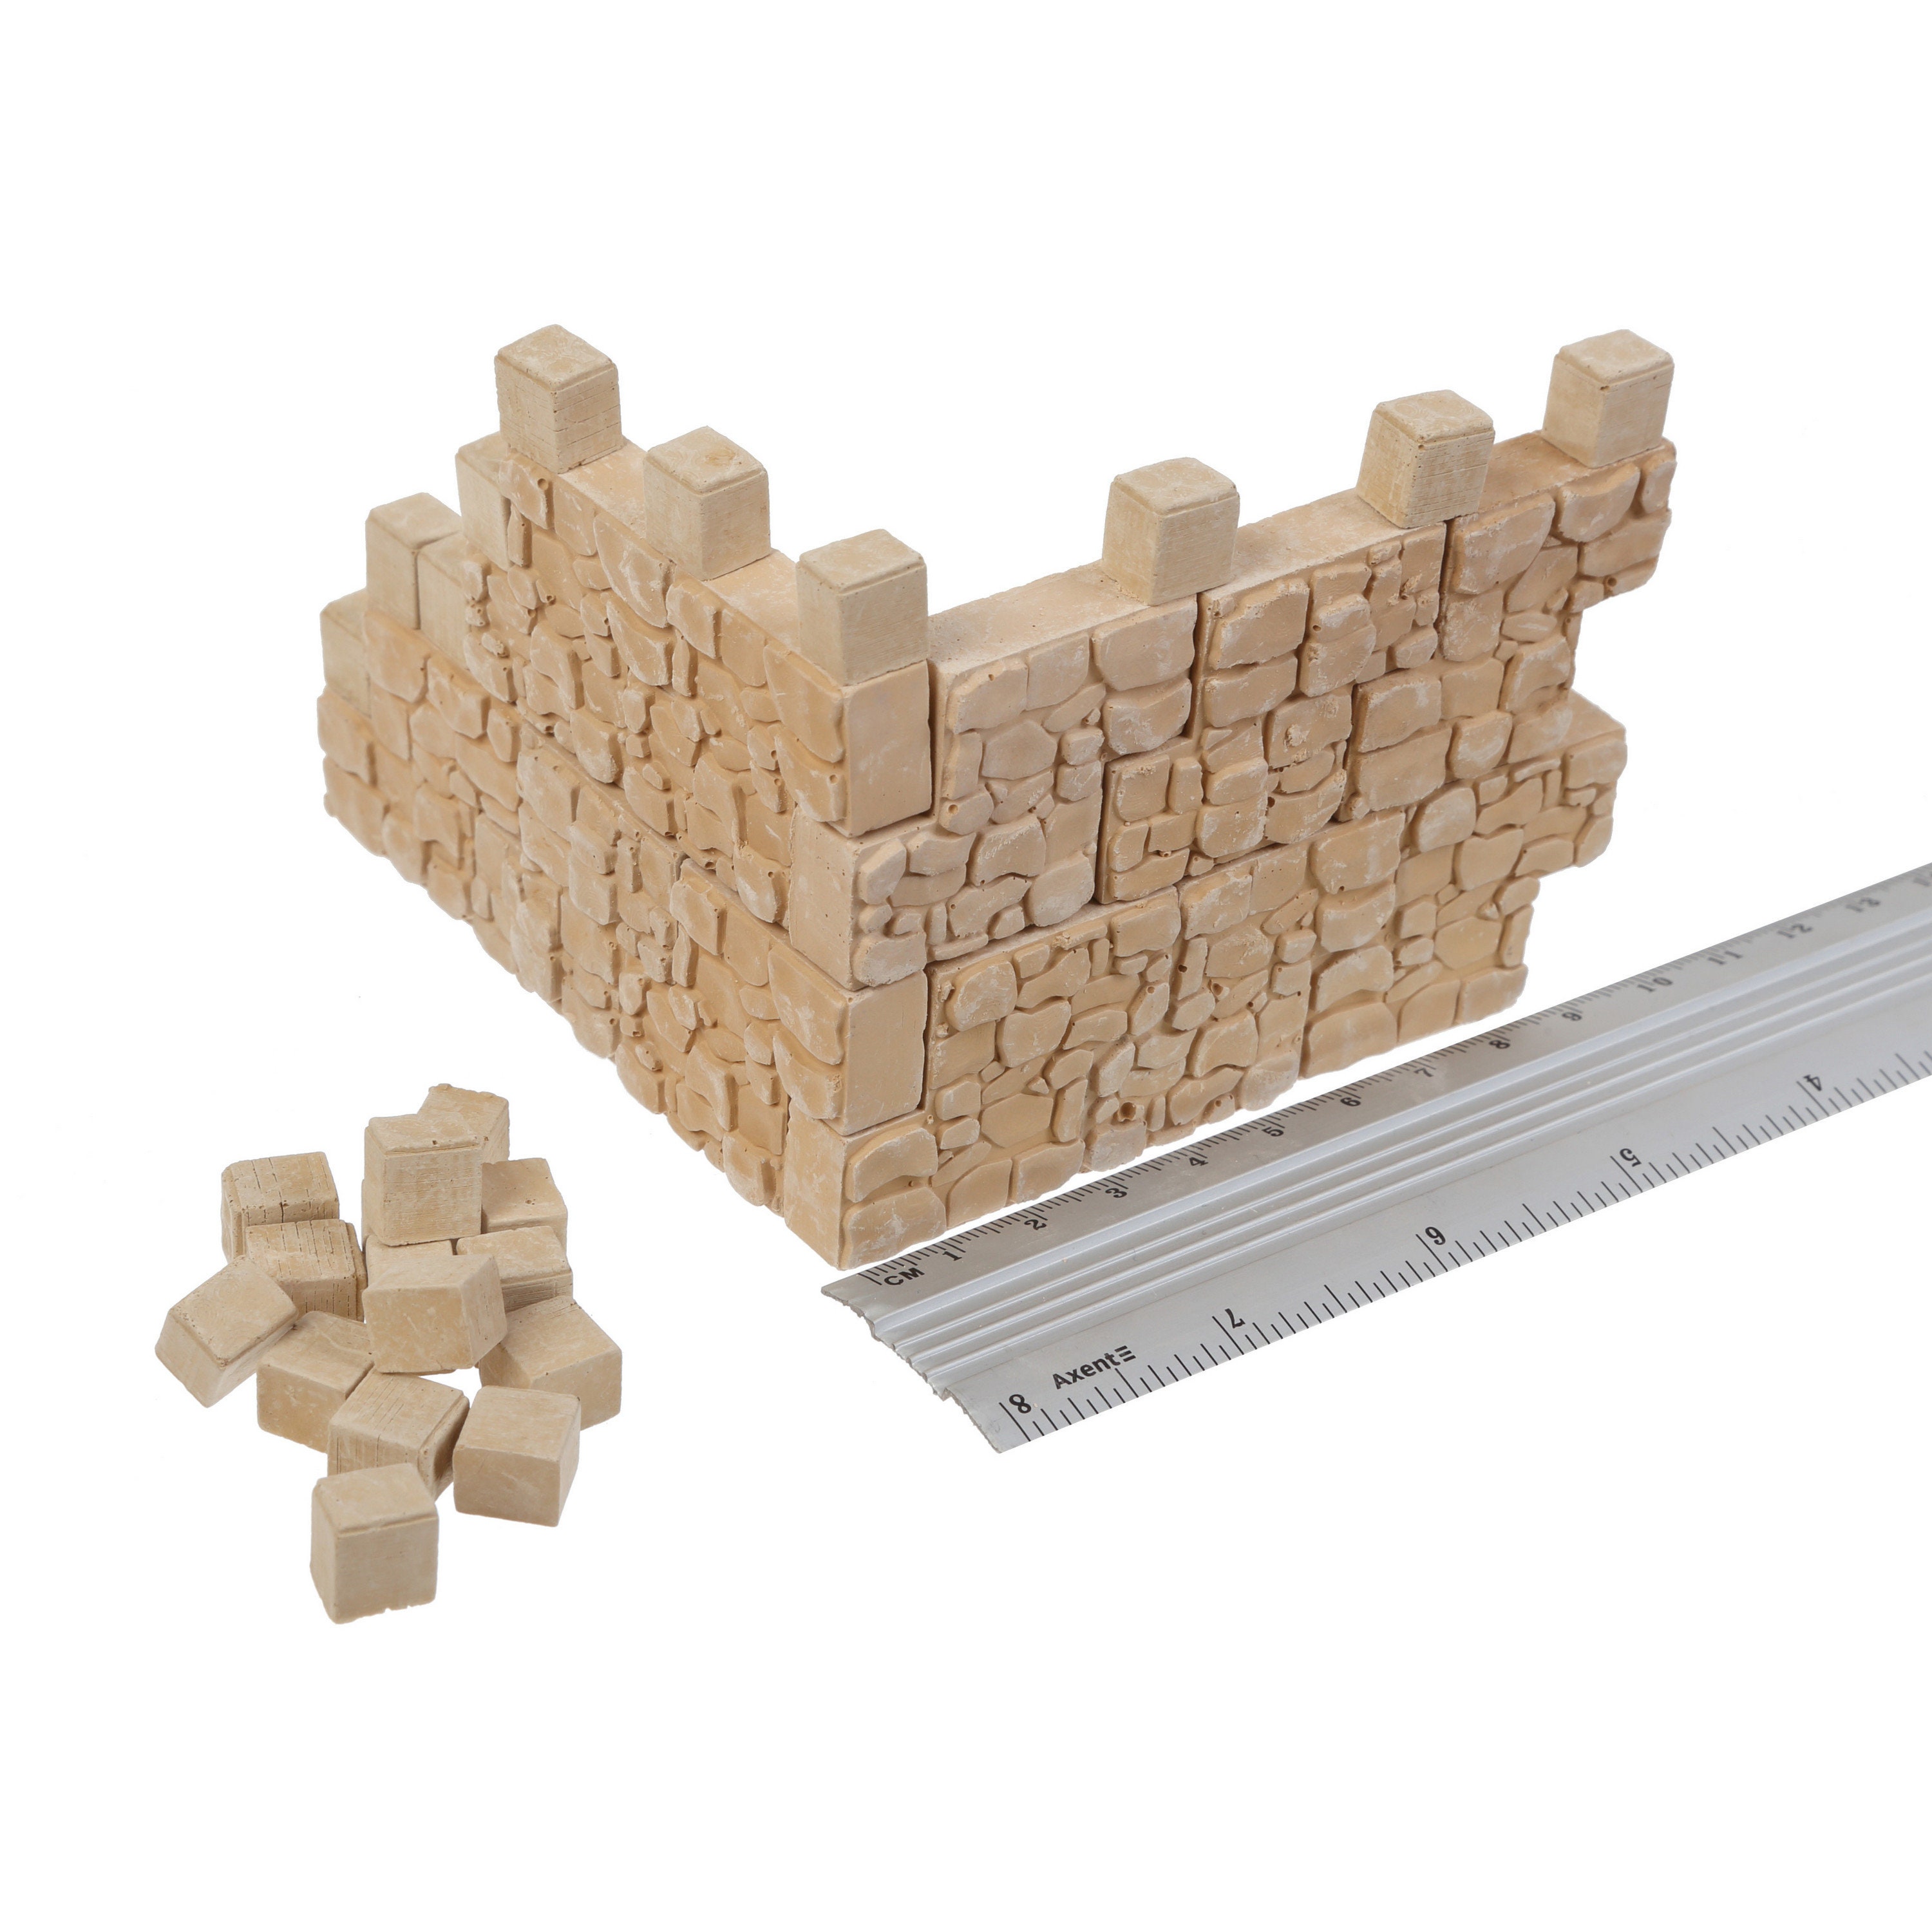 Mini Bricks, Mini Pavers, Miniature Bricks, School Project, Dollhouse Bricks,  Miniature Bricks for Model Stones Walls, Floors, Stone Bricks 